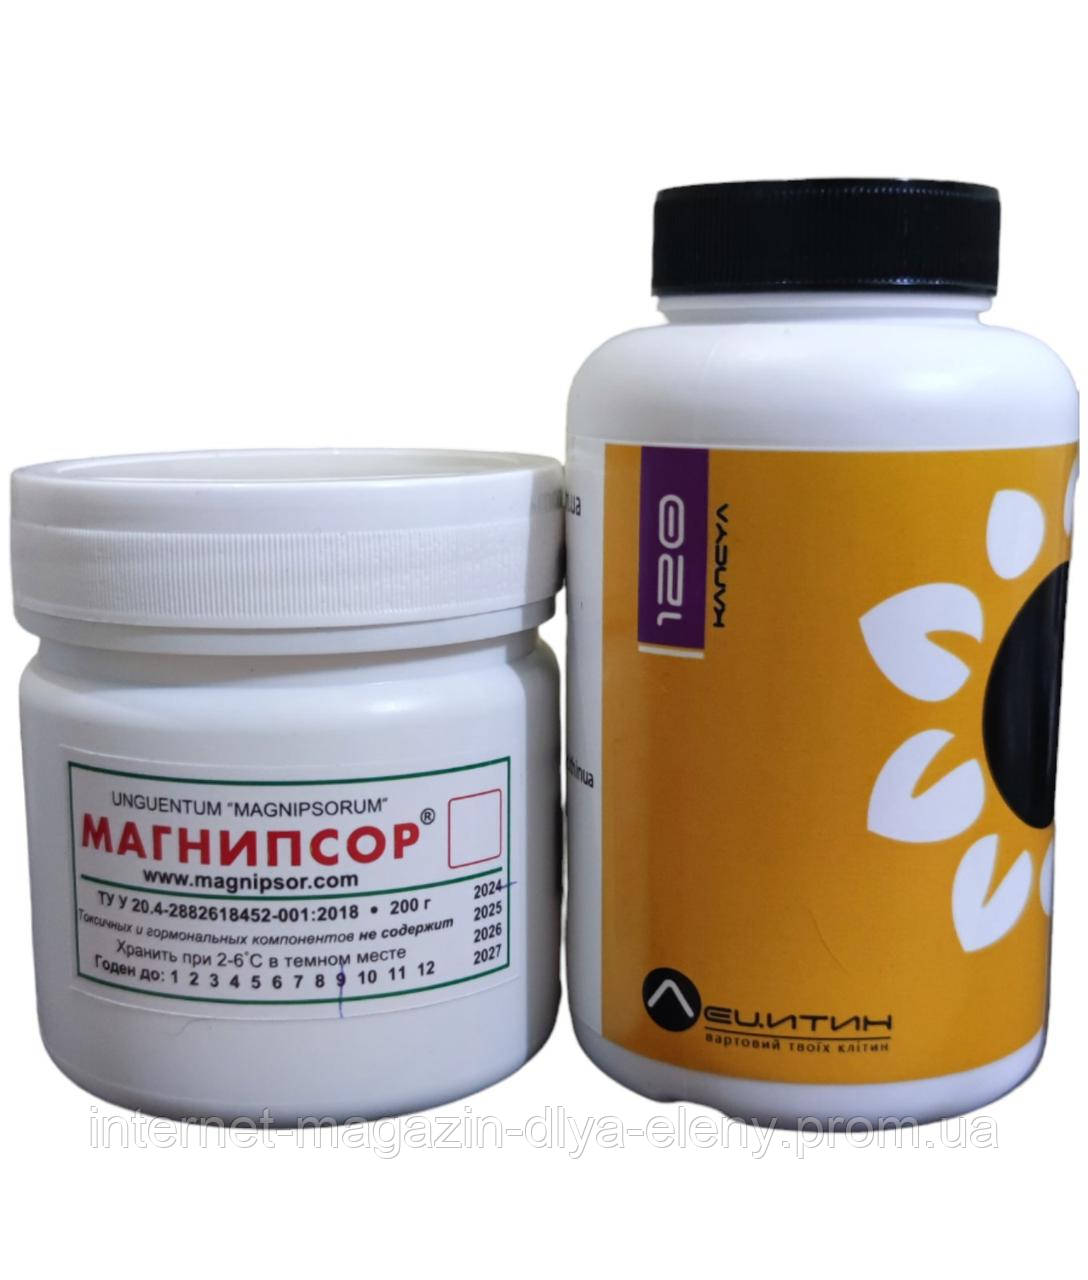 Набор для лечения псориаза  - мазь "Манипсор" и лецитин подсолнечный в капсулах (120 капсул)